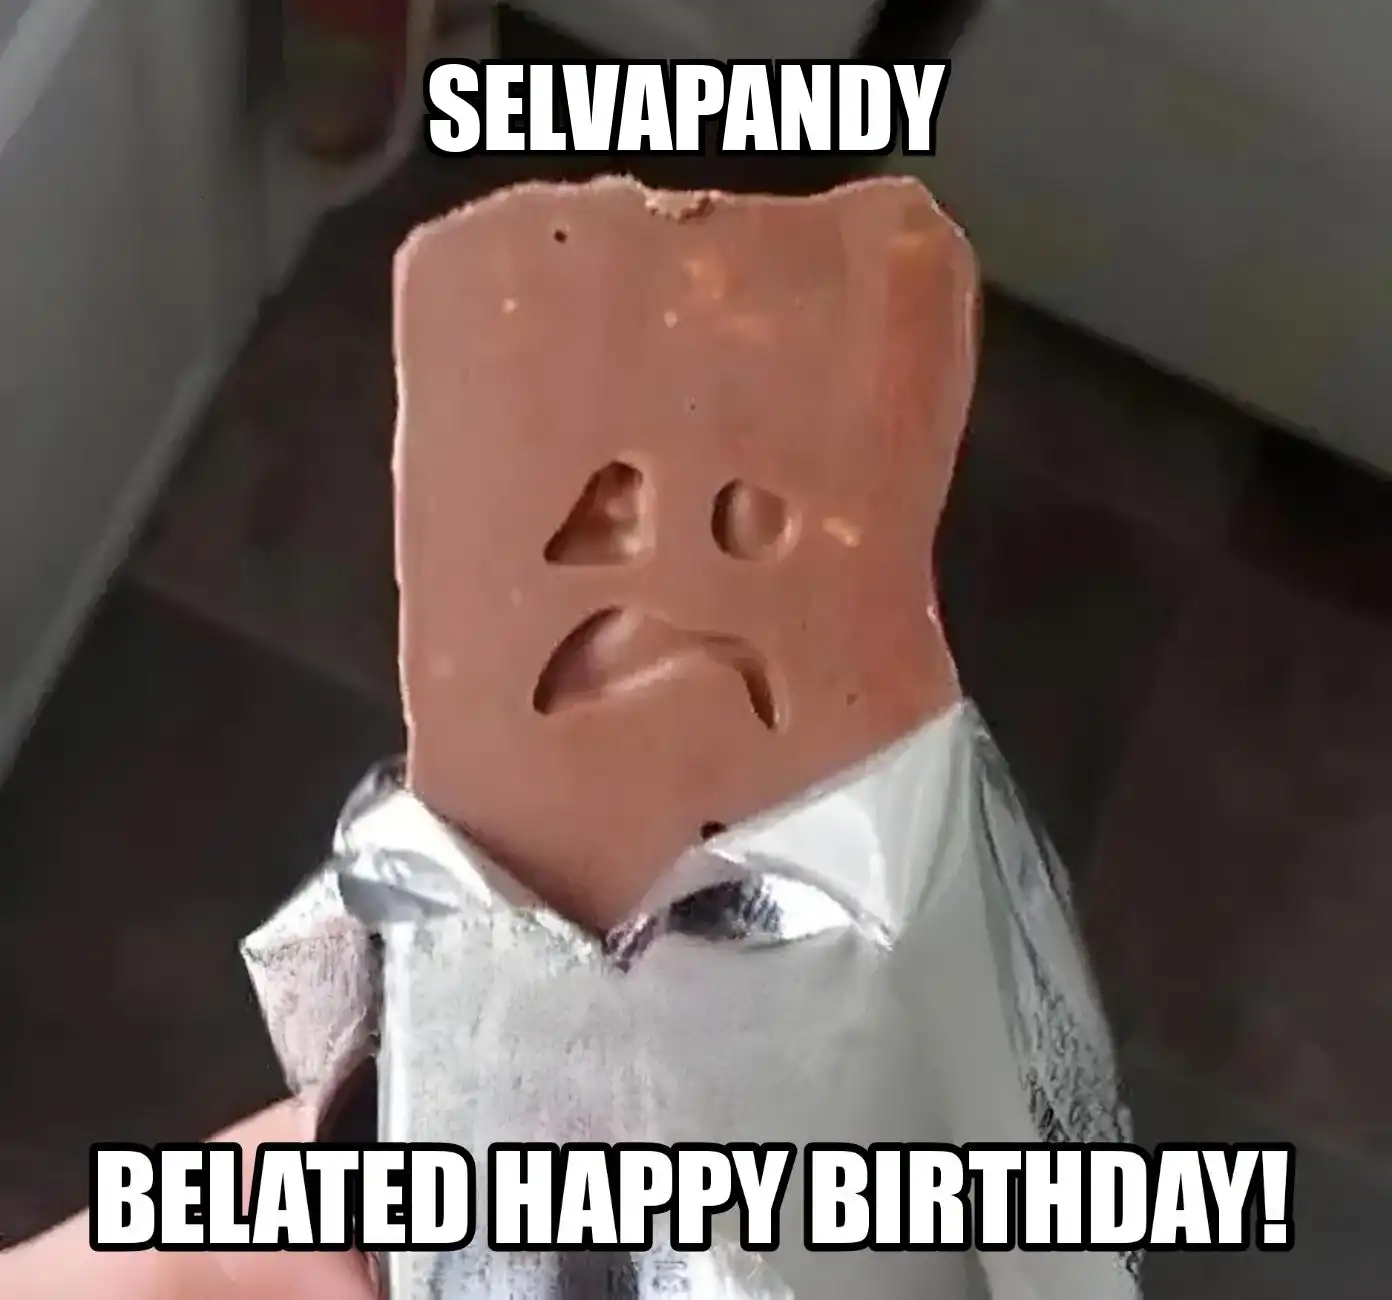 Happy Birthday Selvapandy Belated Happy Birthday Meme